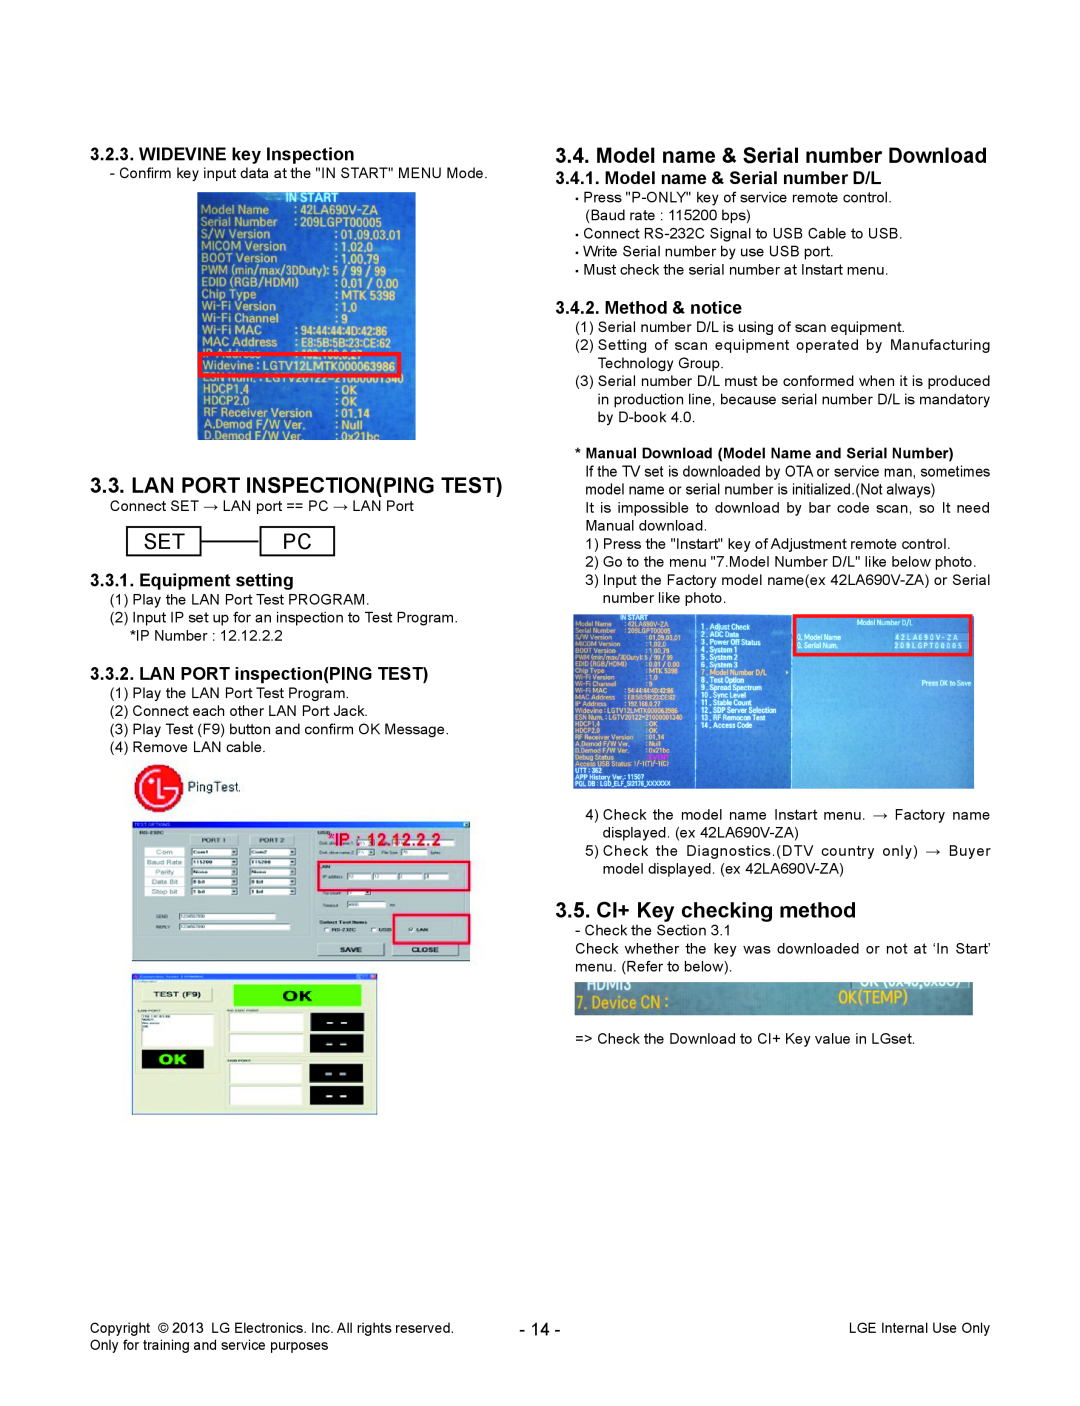 LG Electronics 32LA62**-Z* service manual Lan Port Inspectionping Test, Set Pc, Model name & Serial number Download 